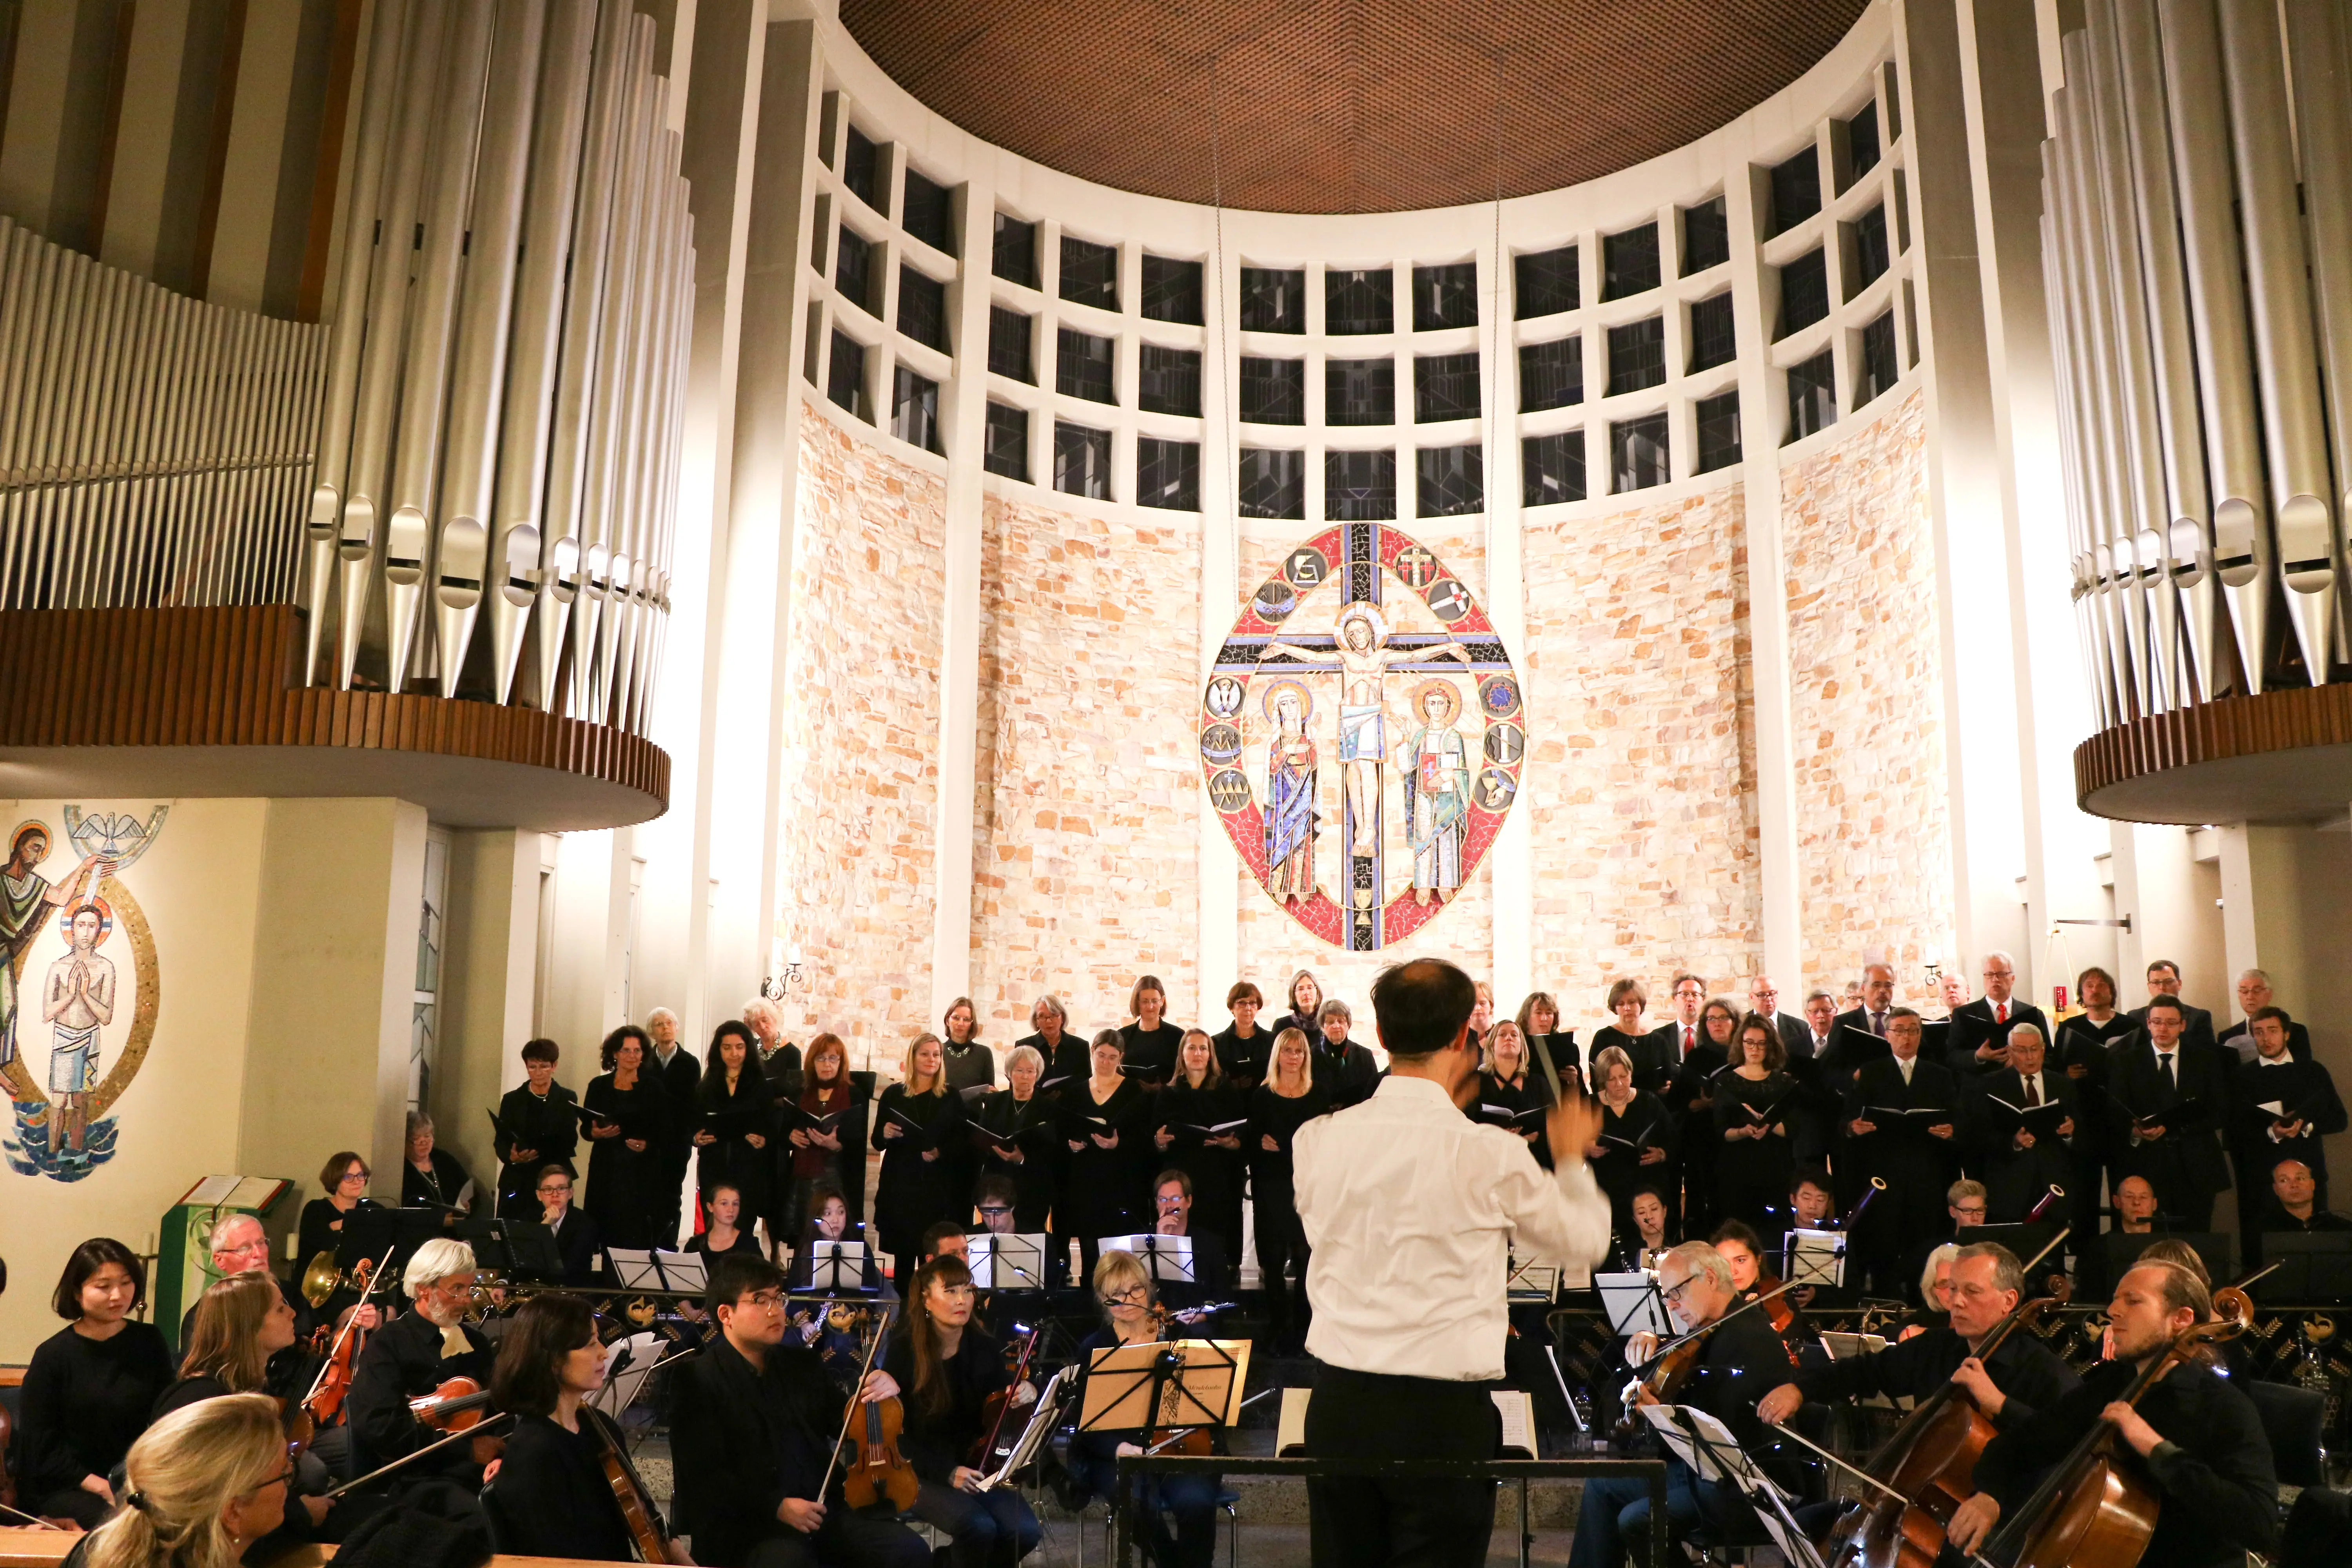 Das Reformationskonzert 2017 in der Katholischen Kirche St. Katharina in Bad Soden. Zu sehen ist Dekanatskantor Bernhard Zosel, der Orchester und Chor dirigiert.